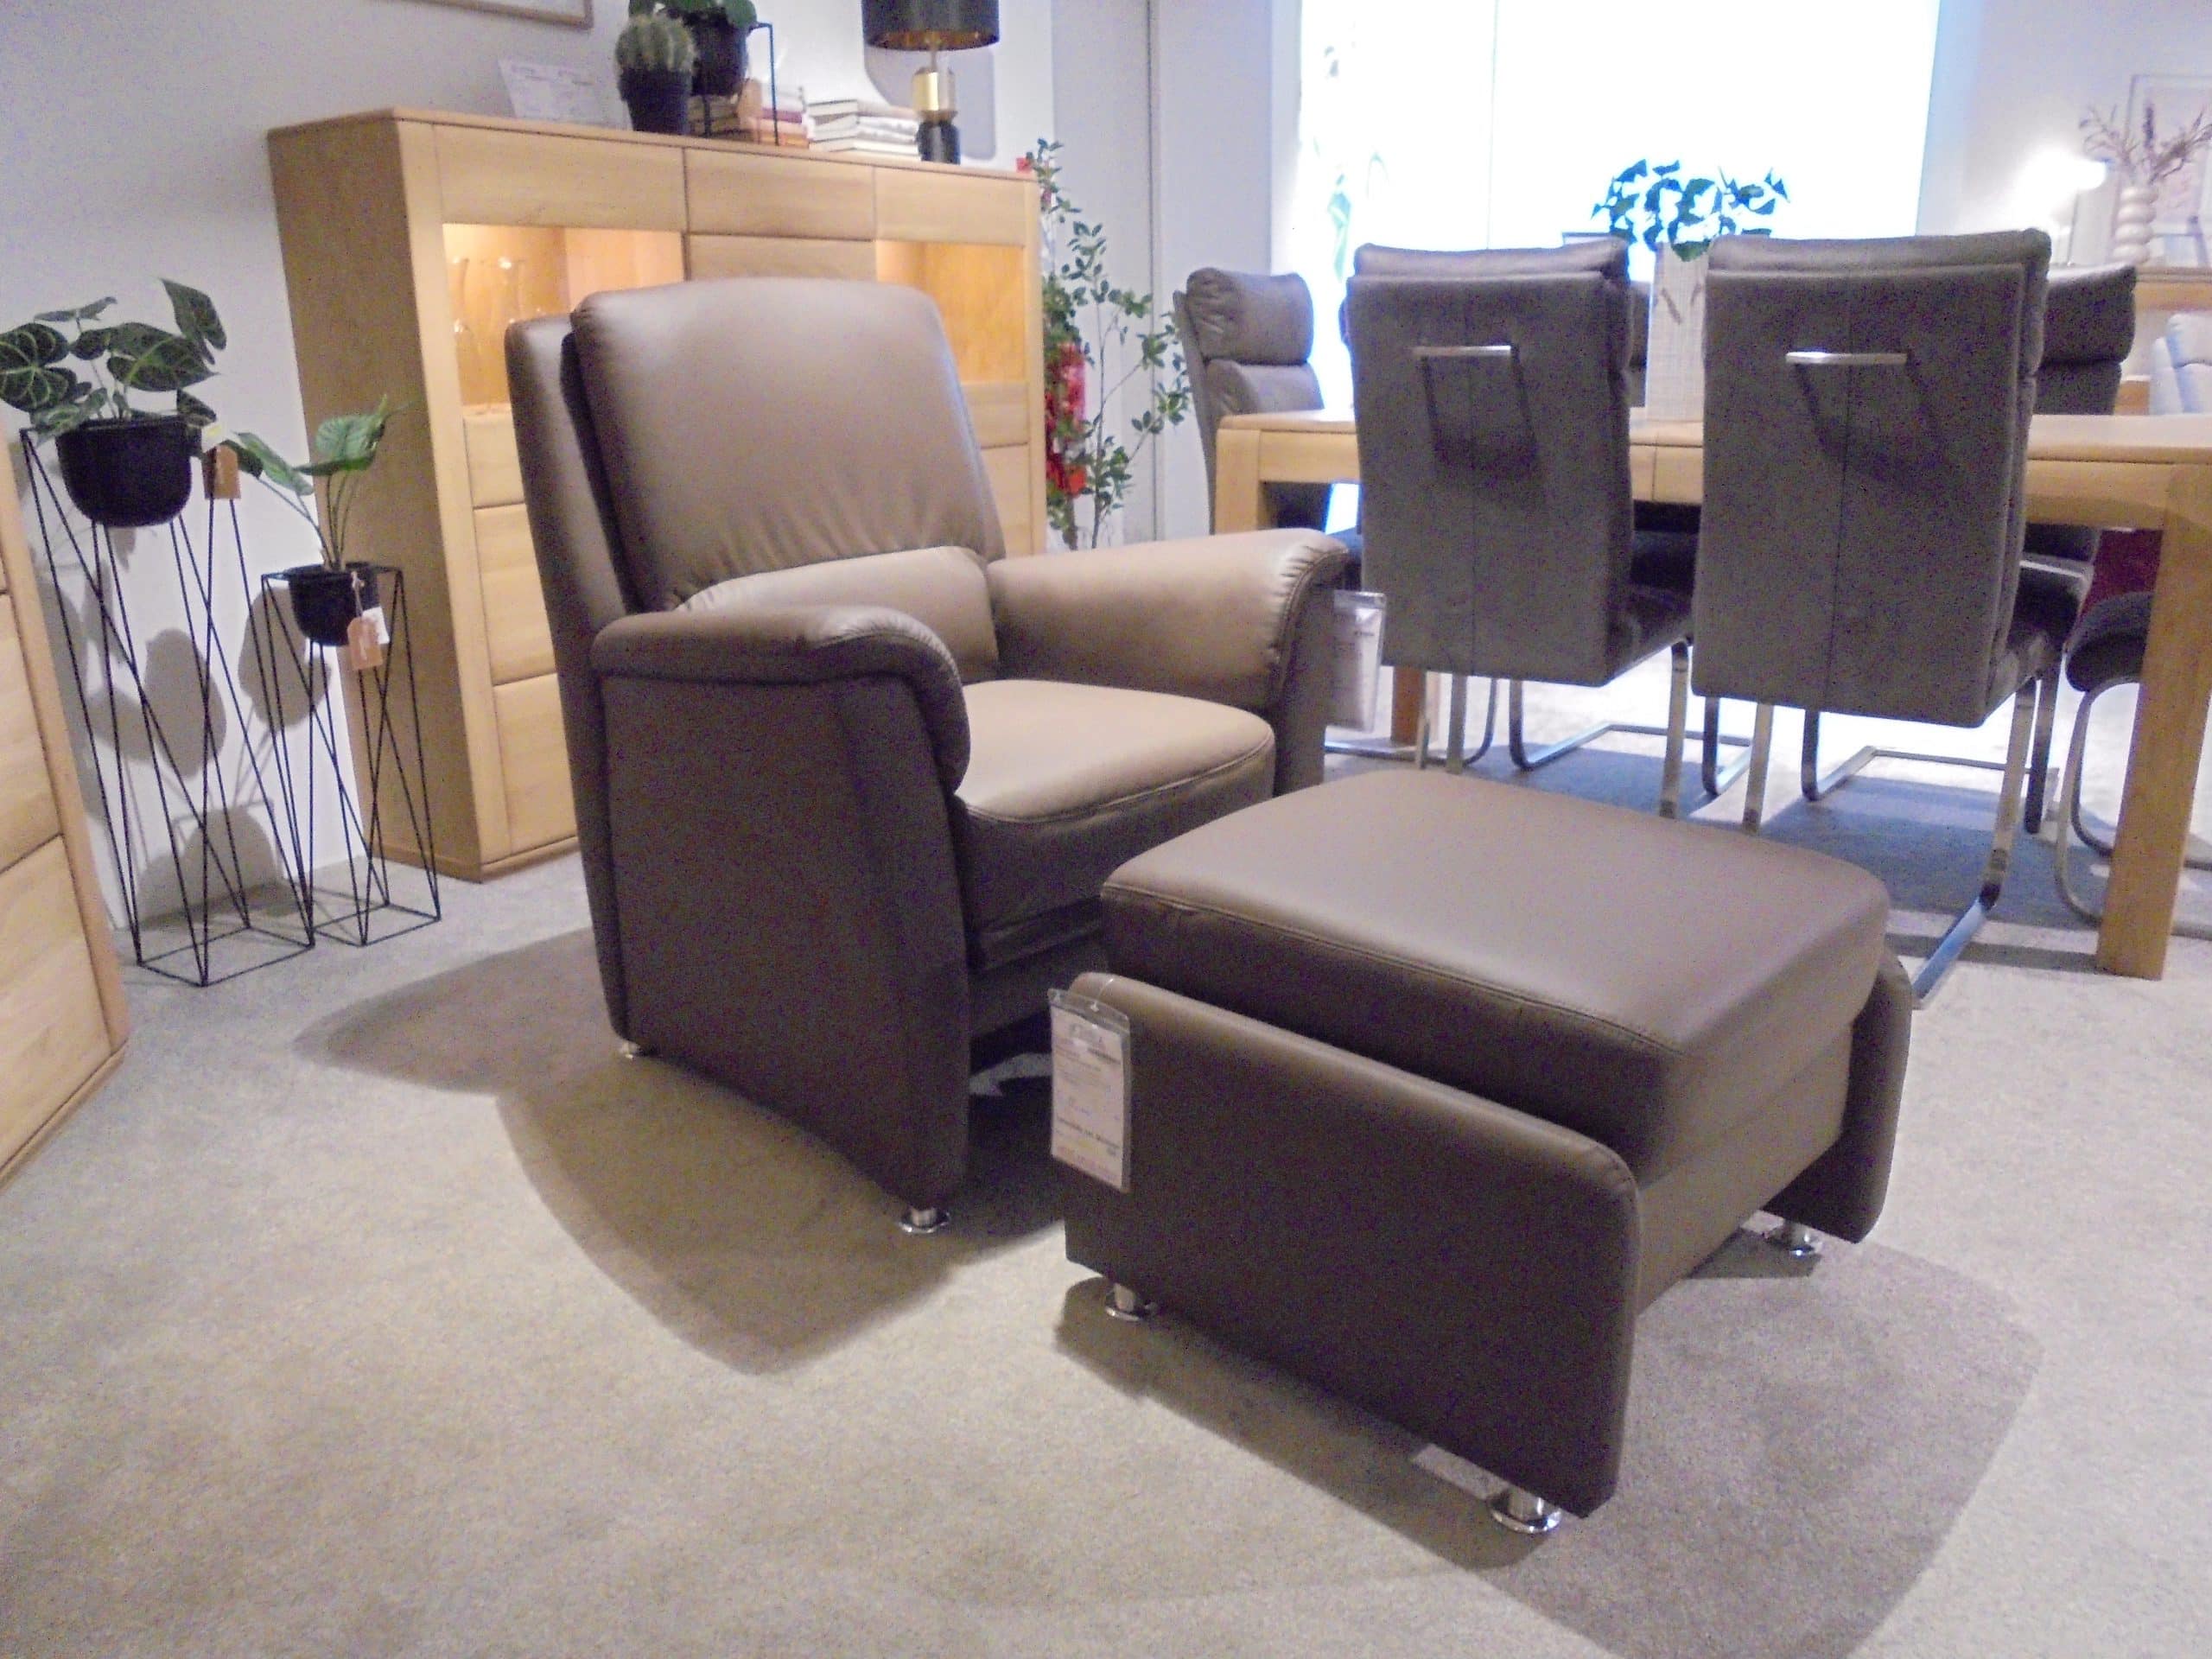 Im Möbelhaus Thiex gibt es derzeit einen Abverkauf der Polstergarnitur Premium 2400 mit Lederbezug. Die Garnitur besteht aus einem 3-Sitzer, einem 2,5-Sitzer und einem Sessel. Alle Teile sind um 31% reduziert.